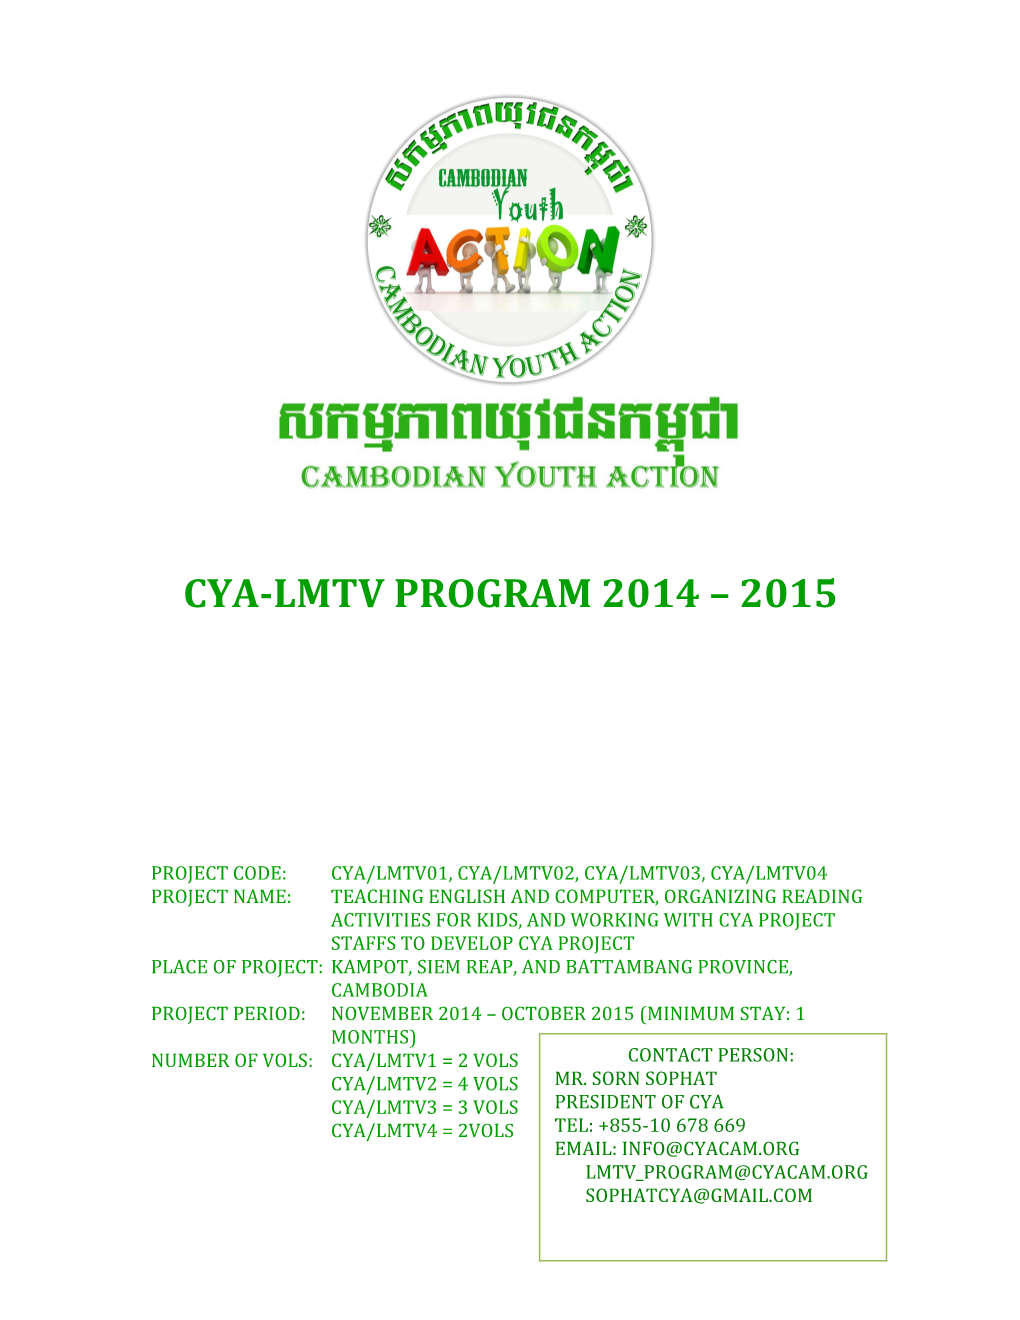 Cya-Lmtv Program 2014 2015